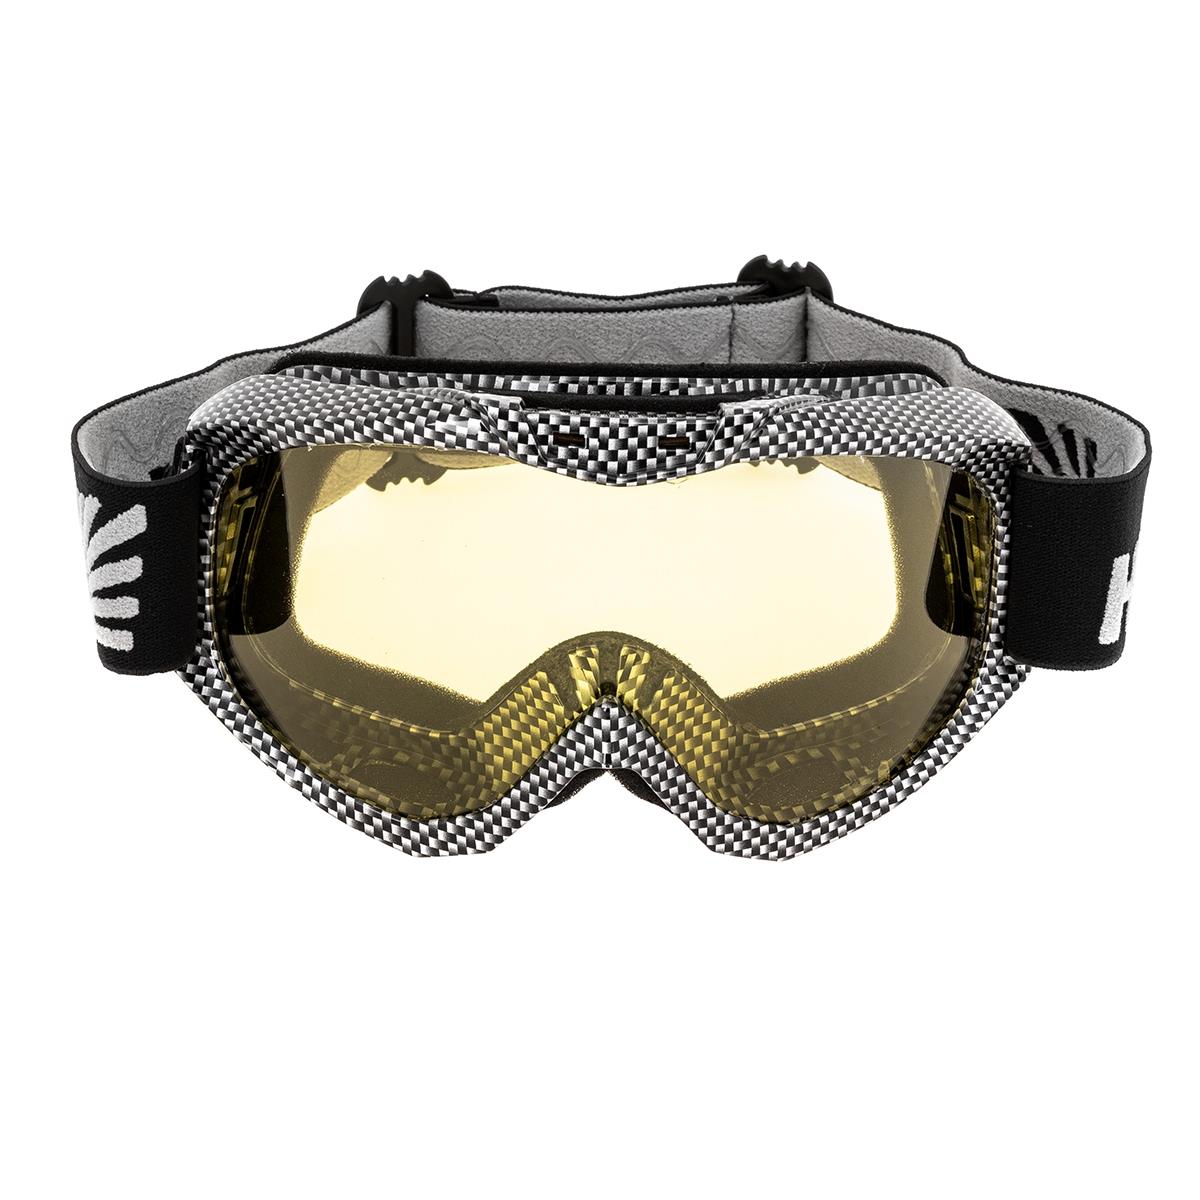 Очки горнолыжные HS-MT-001-Y Helios очки маска для езды на мототехнике разборные визор затемненный